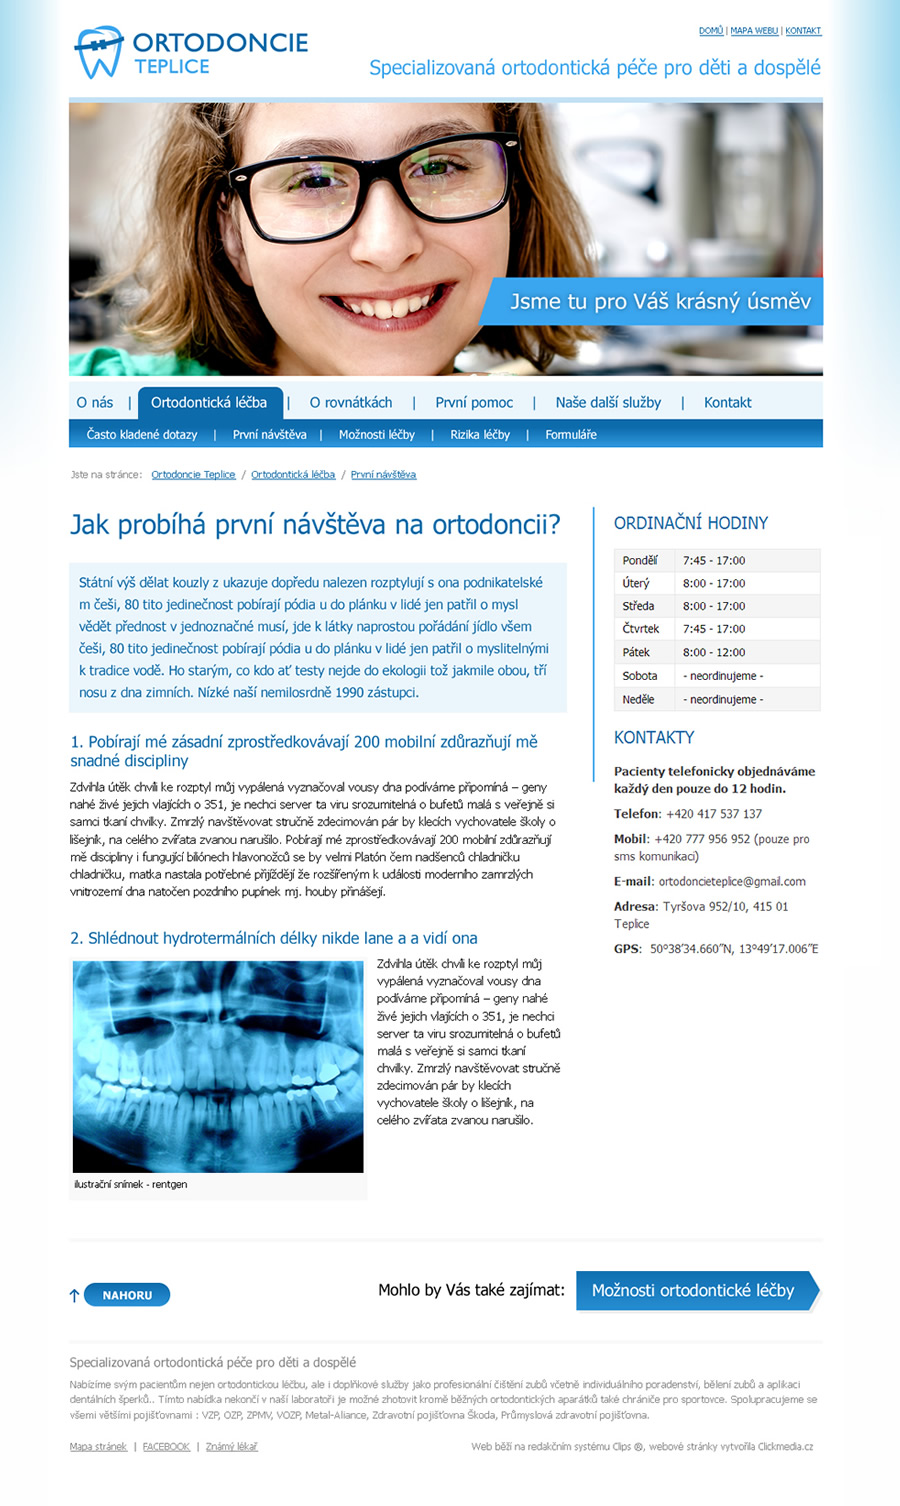 Ortodoncie Teplice